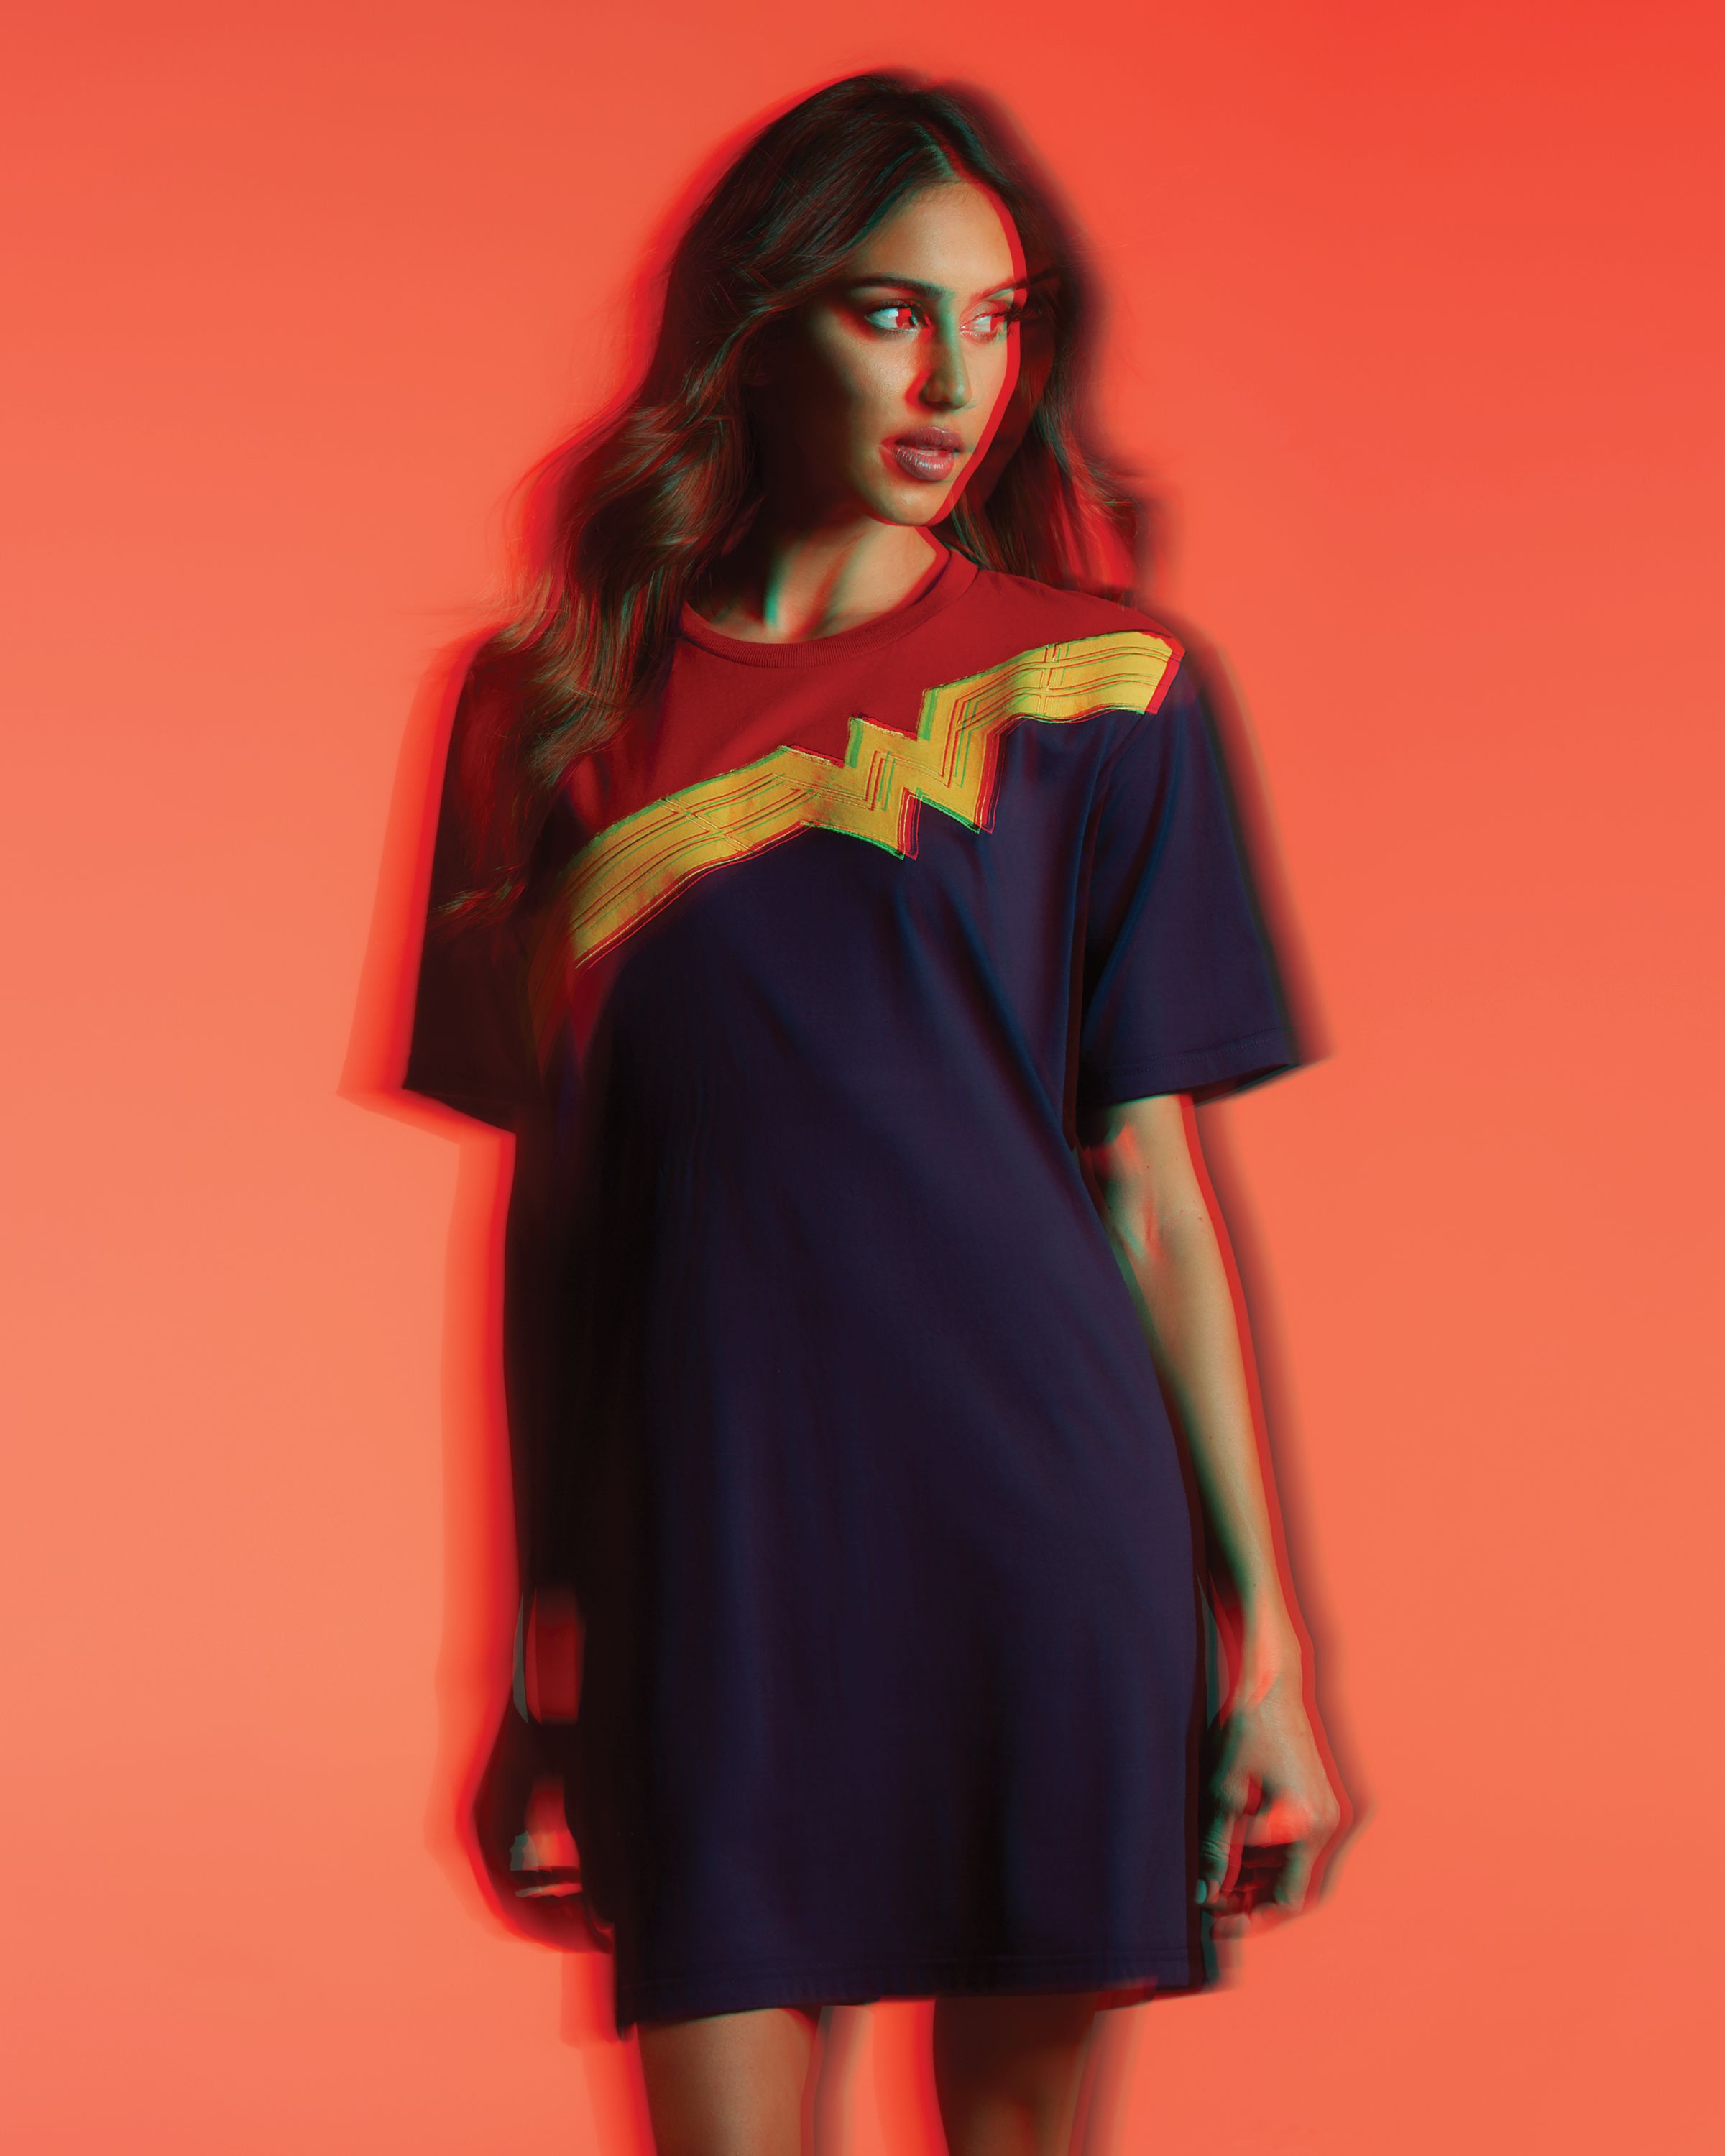 pecho Dependencia articulo DC FanDome lanza una tienda en línea con ropa para la mujer maravilla |  Cultture